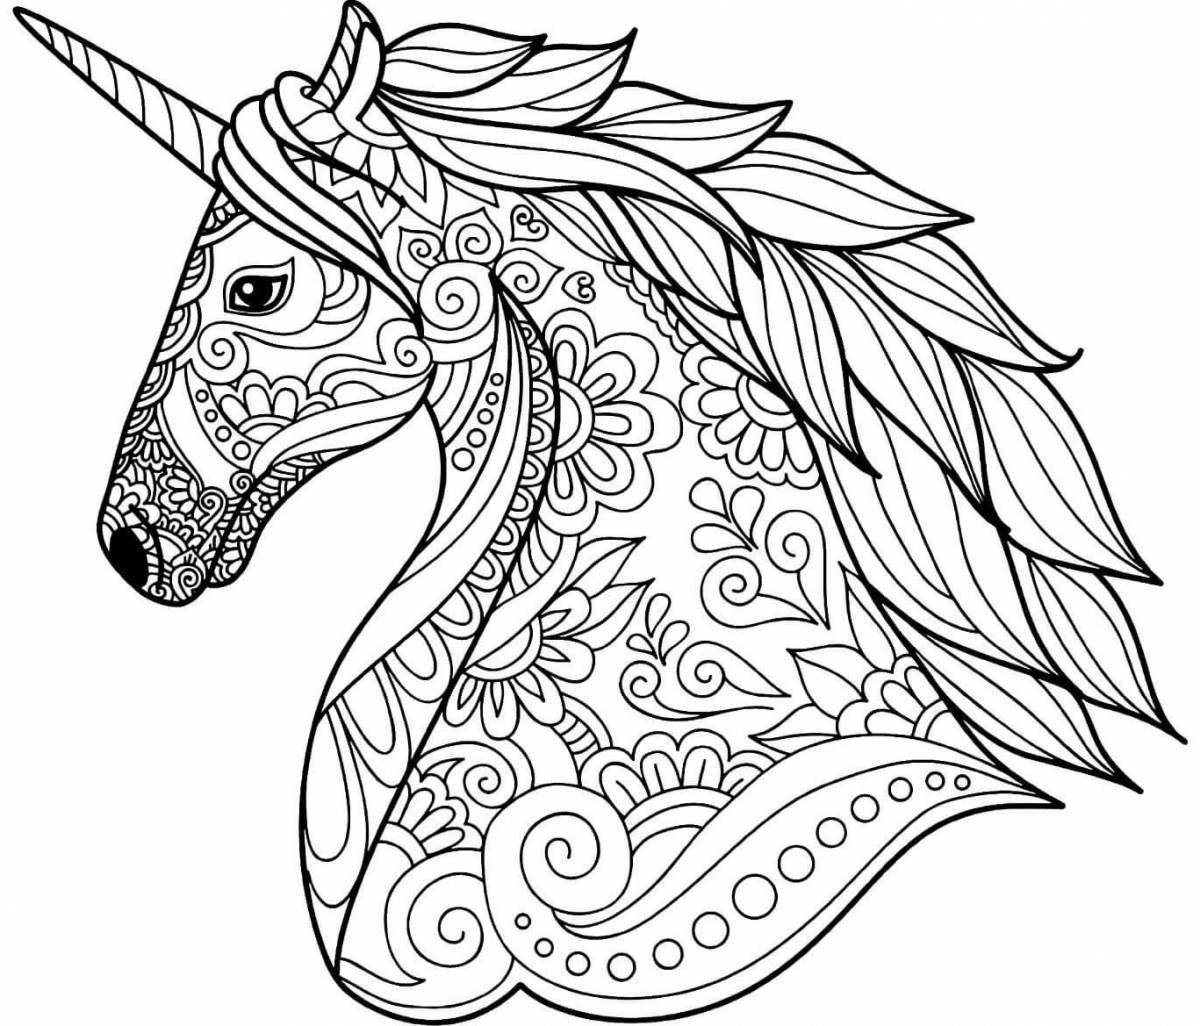 Violent unicorn coloring pages